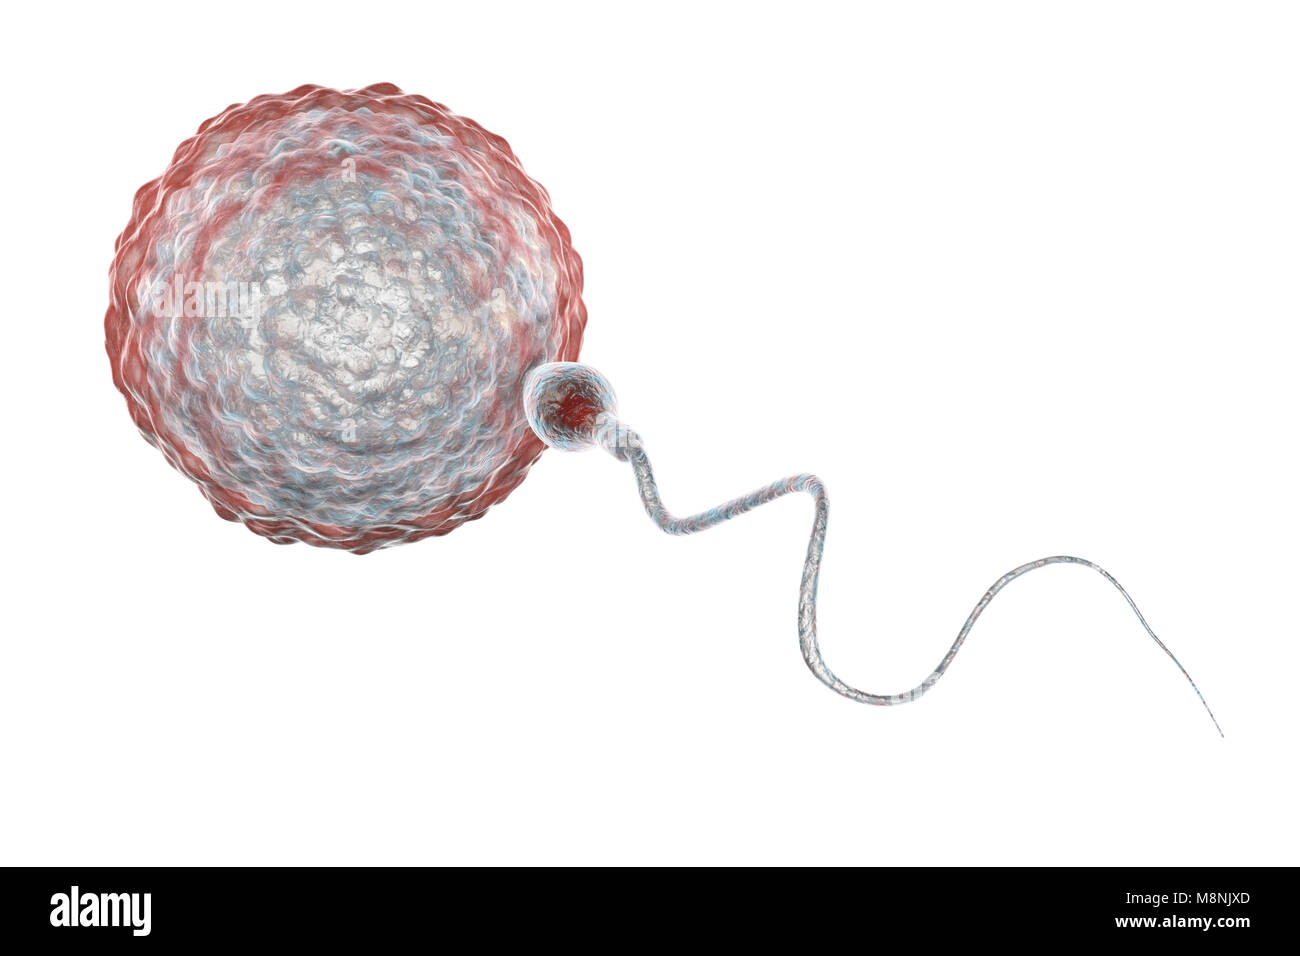 Menschliche Eizelle oder Ei, umgeben von zahlreichen Spermien, computer Abbildung. Bei der Befruchtung, nur ein einzelnes Spermium kann erfolgreich die Eizelle zur Sicherung mit den weiblichen Zellkern eindringen. Hindernisse zu überwinden, gehören Schichten von follikelzellen, die die Eizelle (Corona radiata) und einem zugrunde liegenden Glykoprotein Membran, die Zona pellucida. Die Membran wird durch Enzyme aus der akrosoms freigegeben verdaut, eine Kappe auf dem Kopf der Spermien: anschließende schnelle chemische Veränderungen in der Zona pellucida verhindern das Eindringen von Spermien konkurrieren. Stockfoto